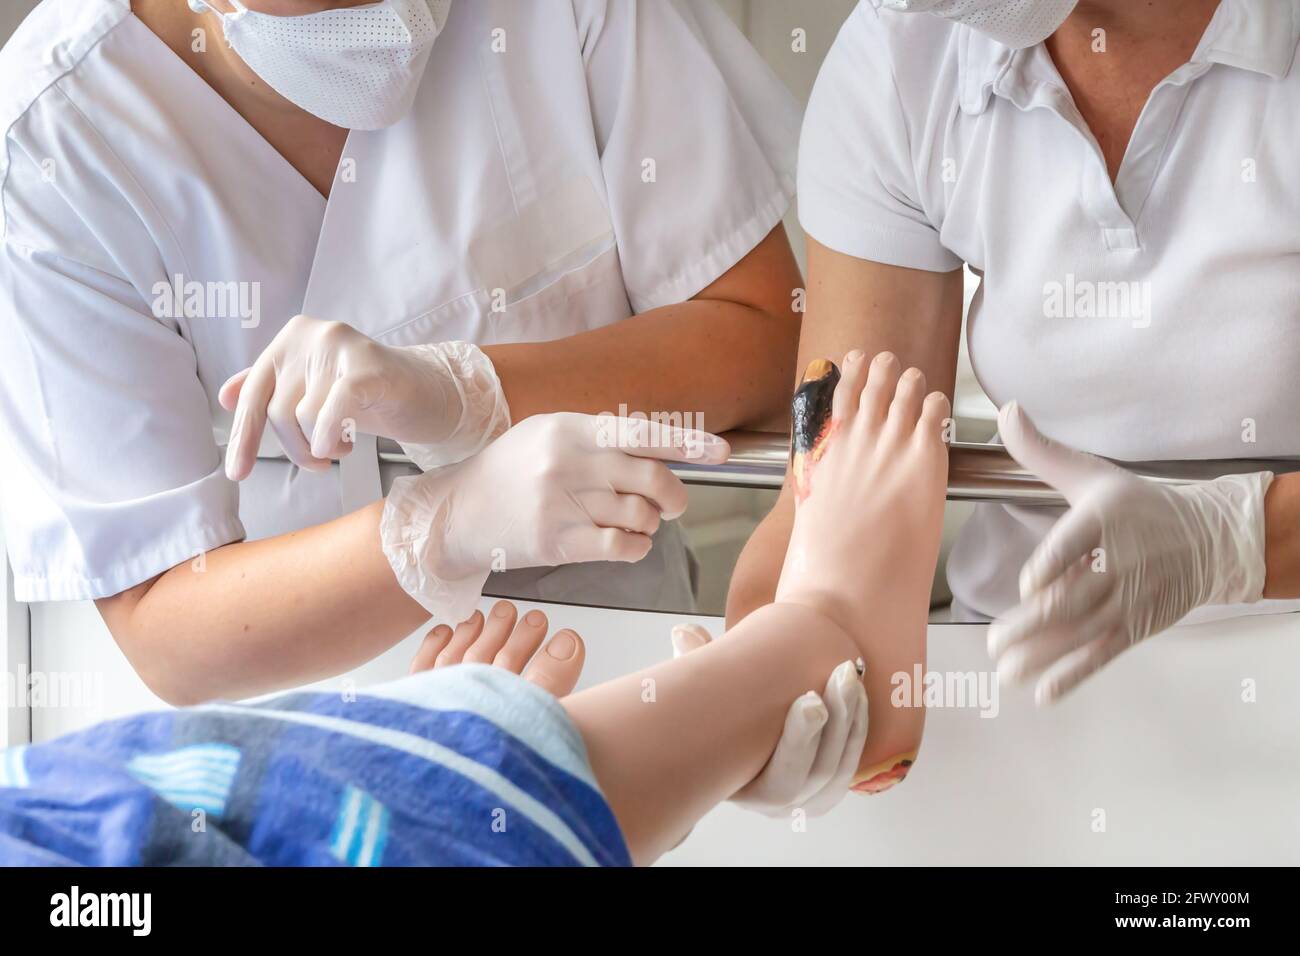 Deux infirmières de l'éducation démontrant le dépistage et l'observation des blessures avec l'aide d'une marionnette infirmière Banque D'Images